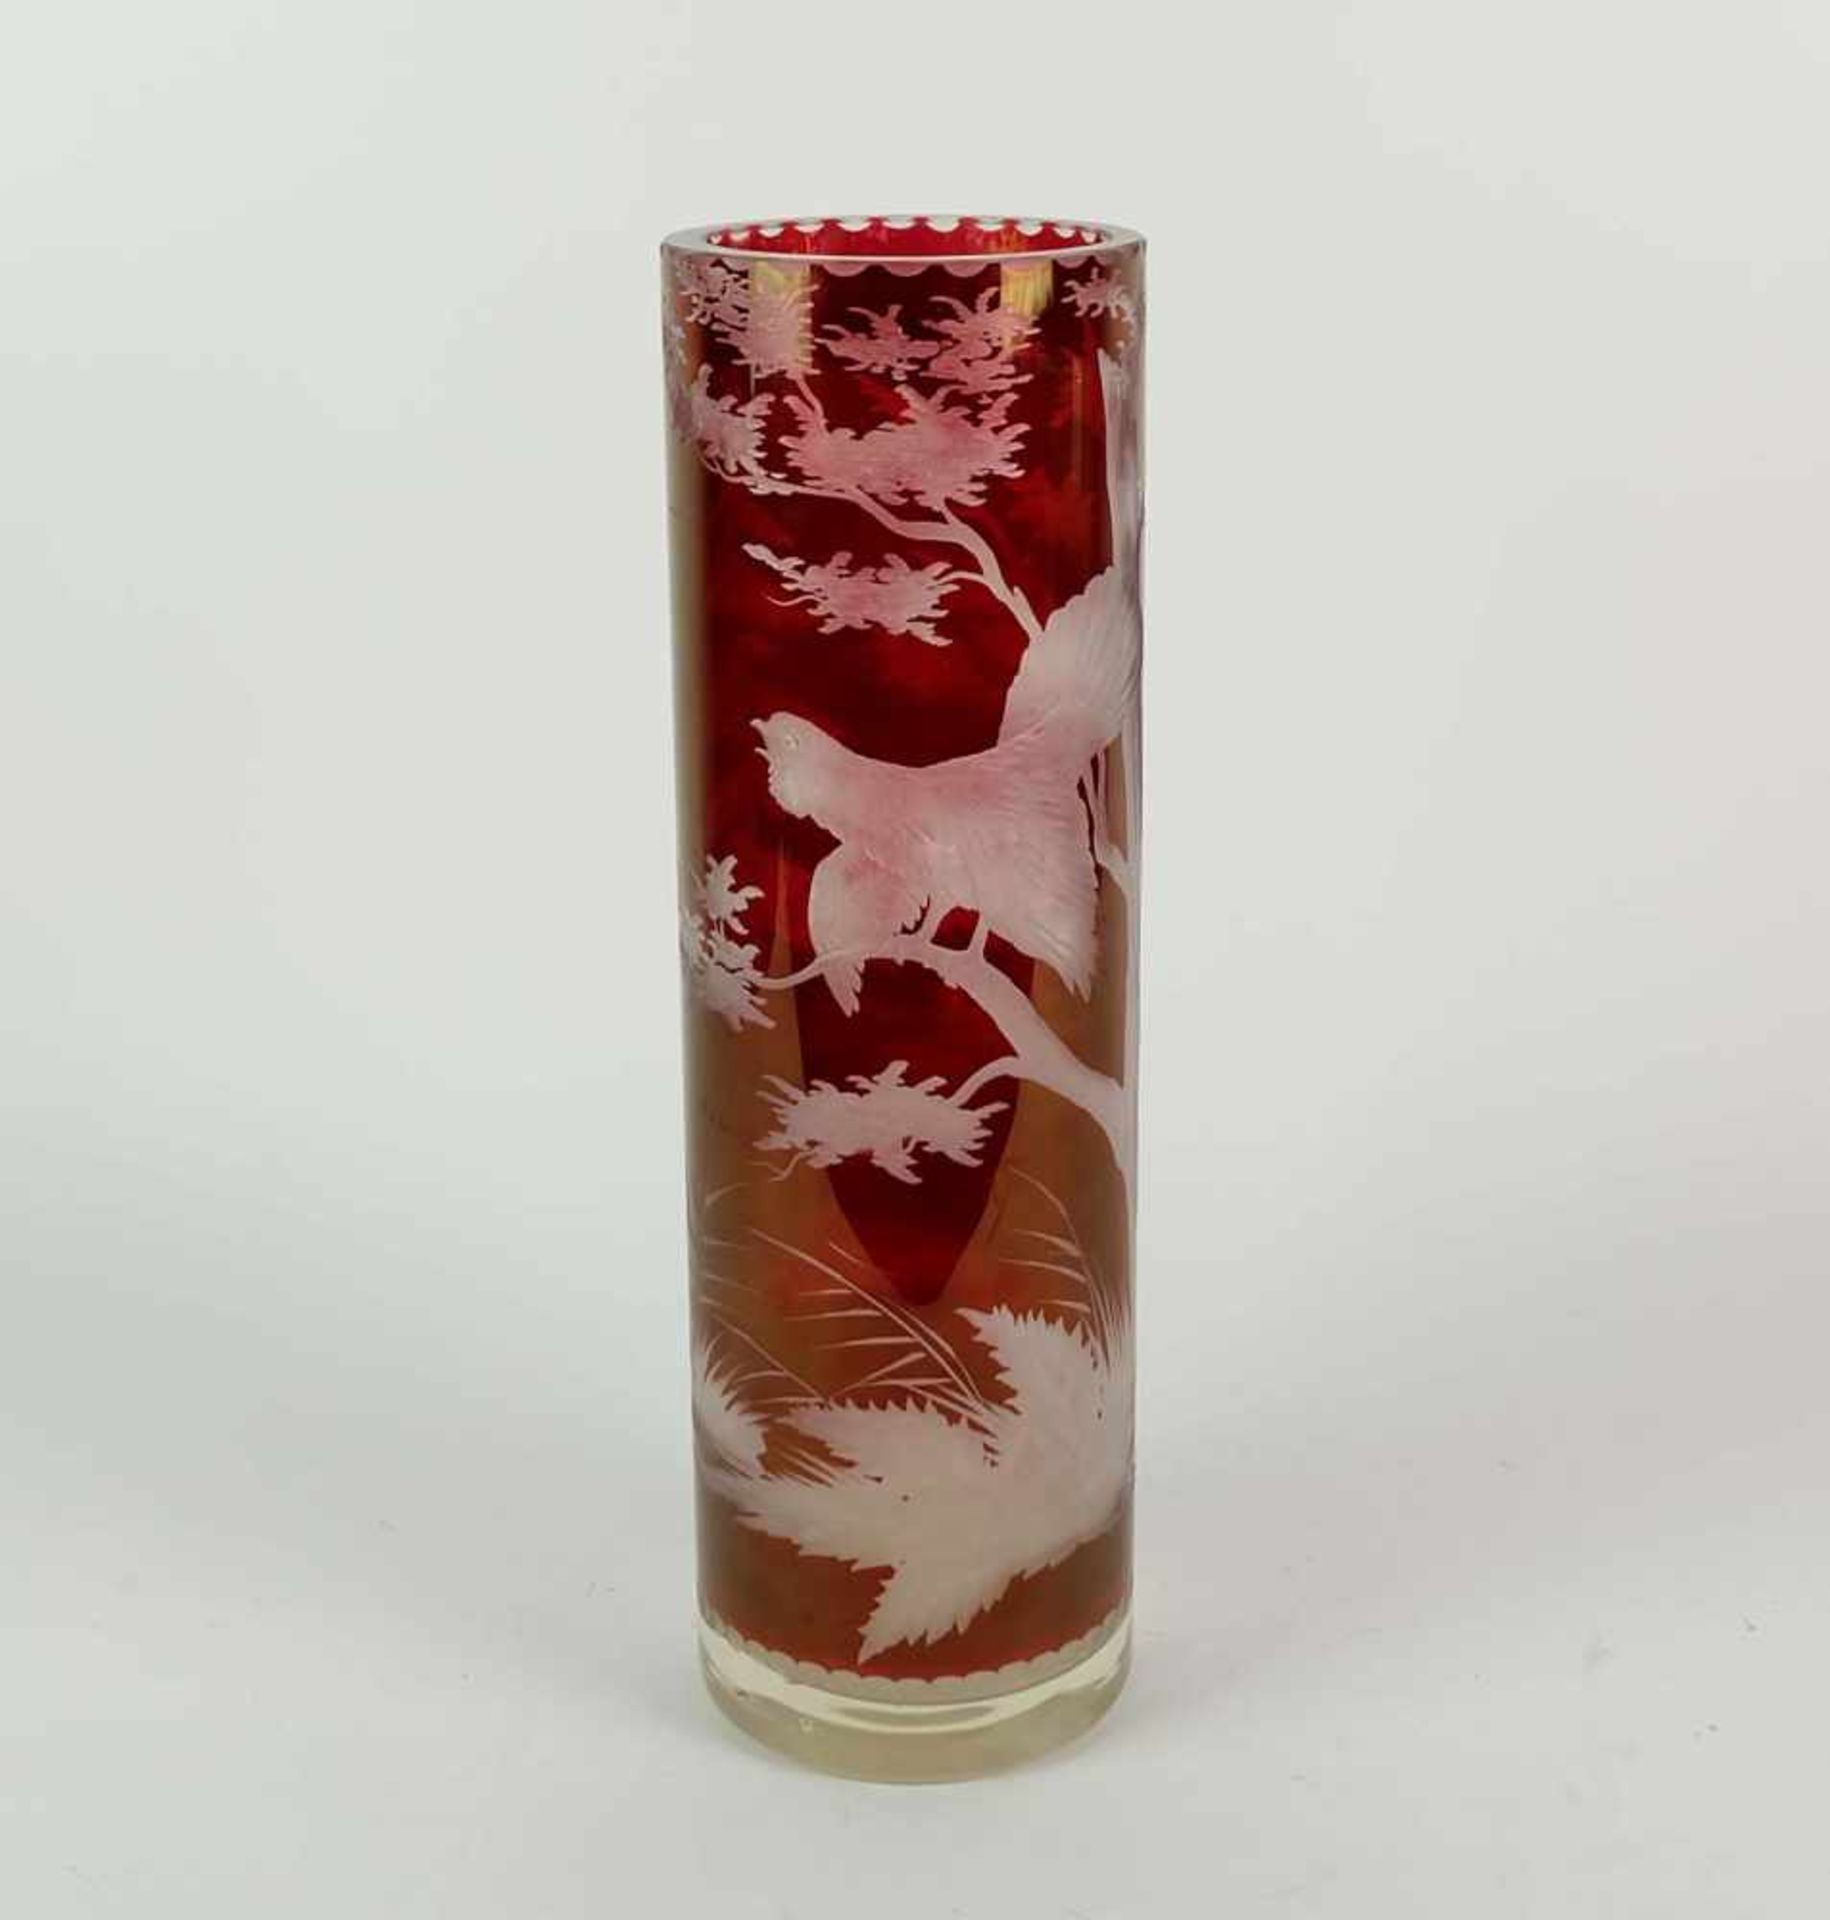 GROßE VASE, Böhmen, frühes 20. Jh., zylindrische Form, farbloses Glas, rubinrot überfangen,